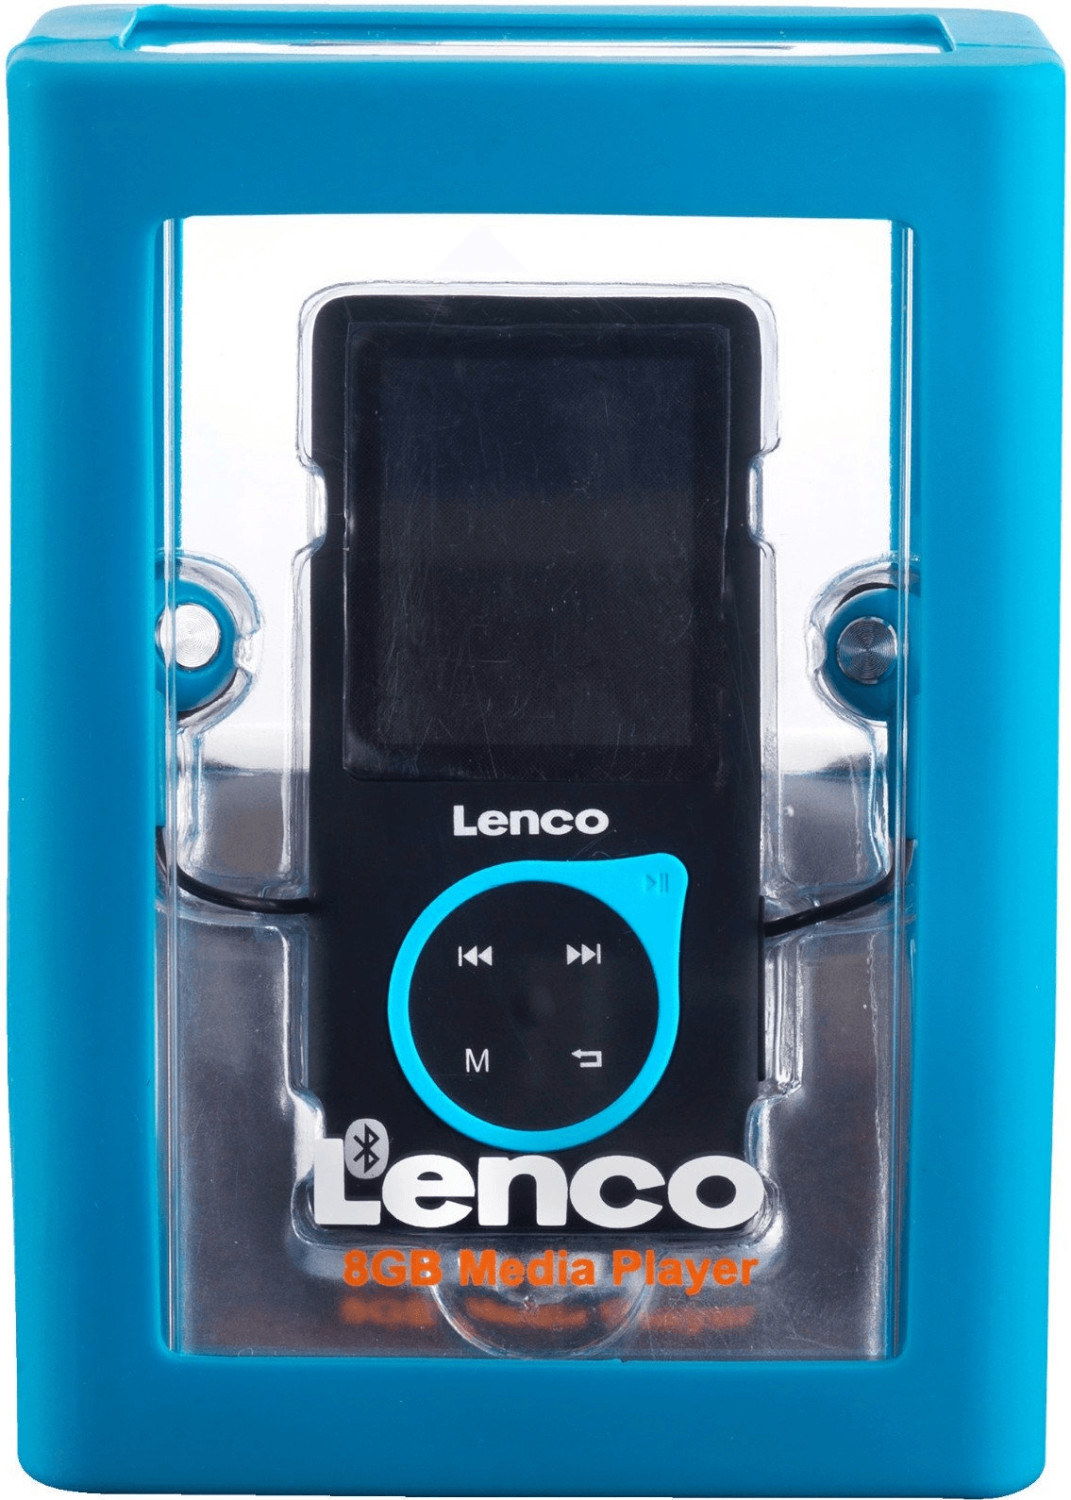 Lenco Xemio-768 ab 41,52 bei € Preisvergleich 